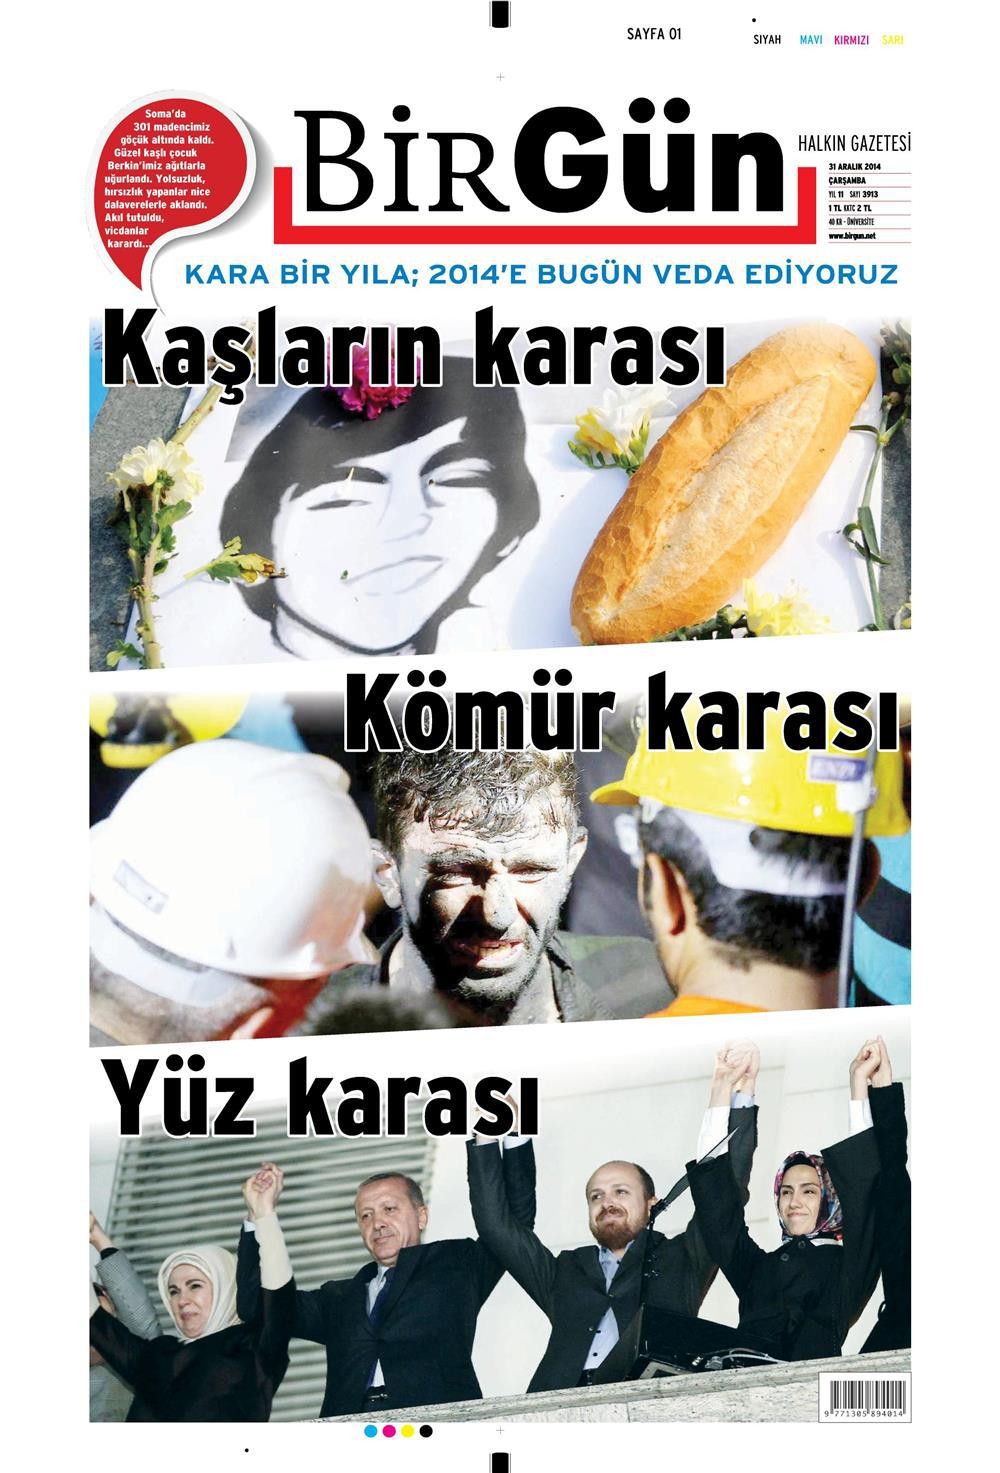 2015'e damgasını vuran dergi kapakları ve manşetler - Resim: 2